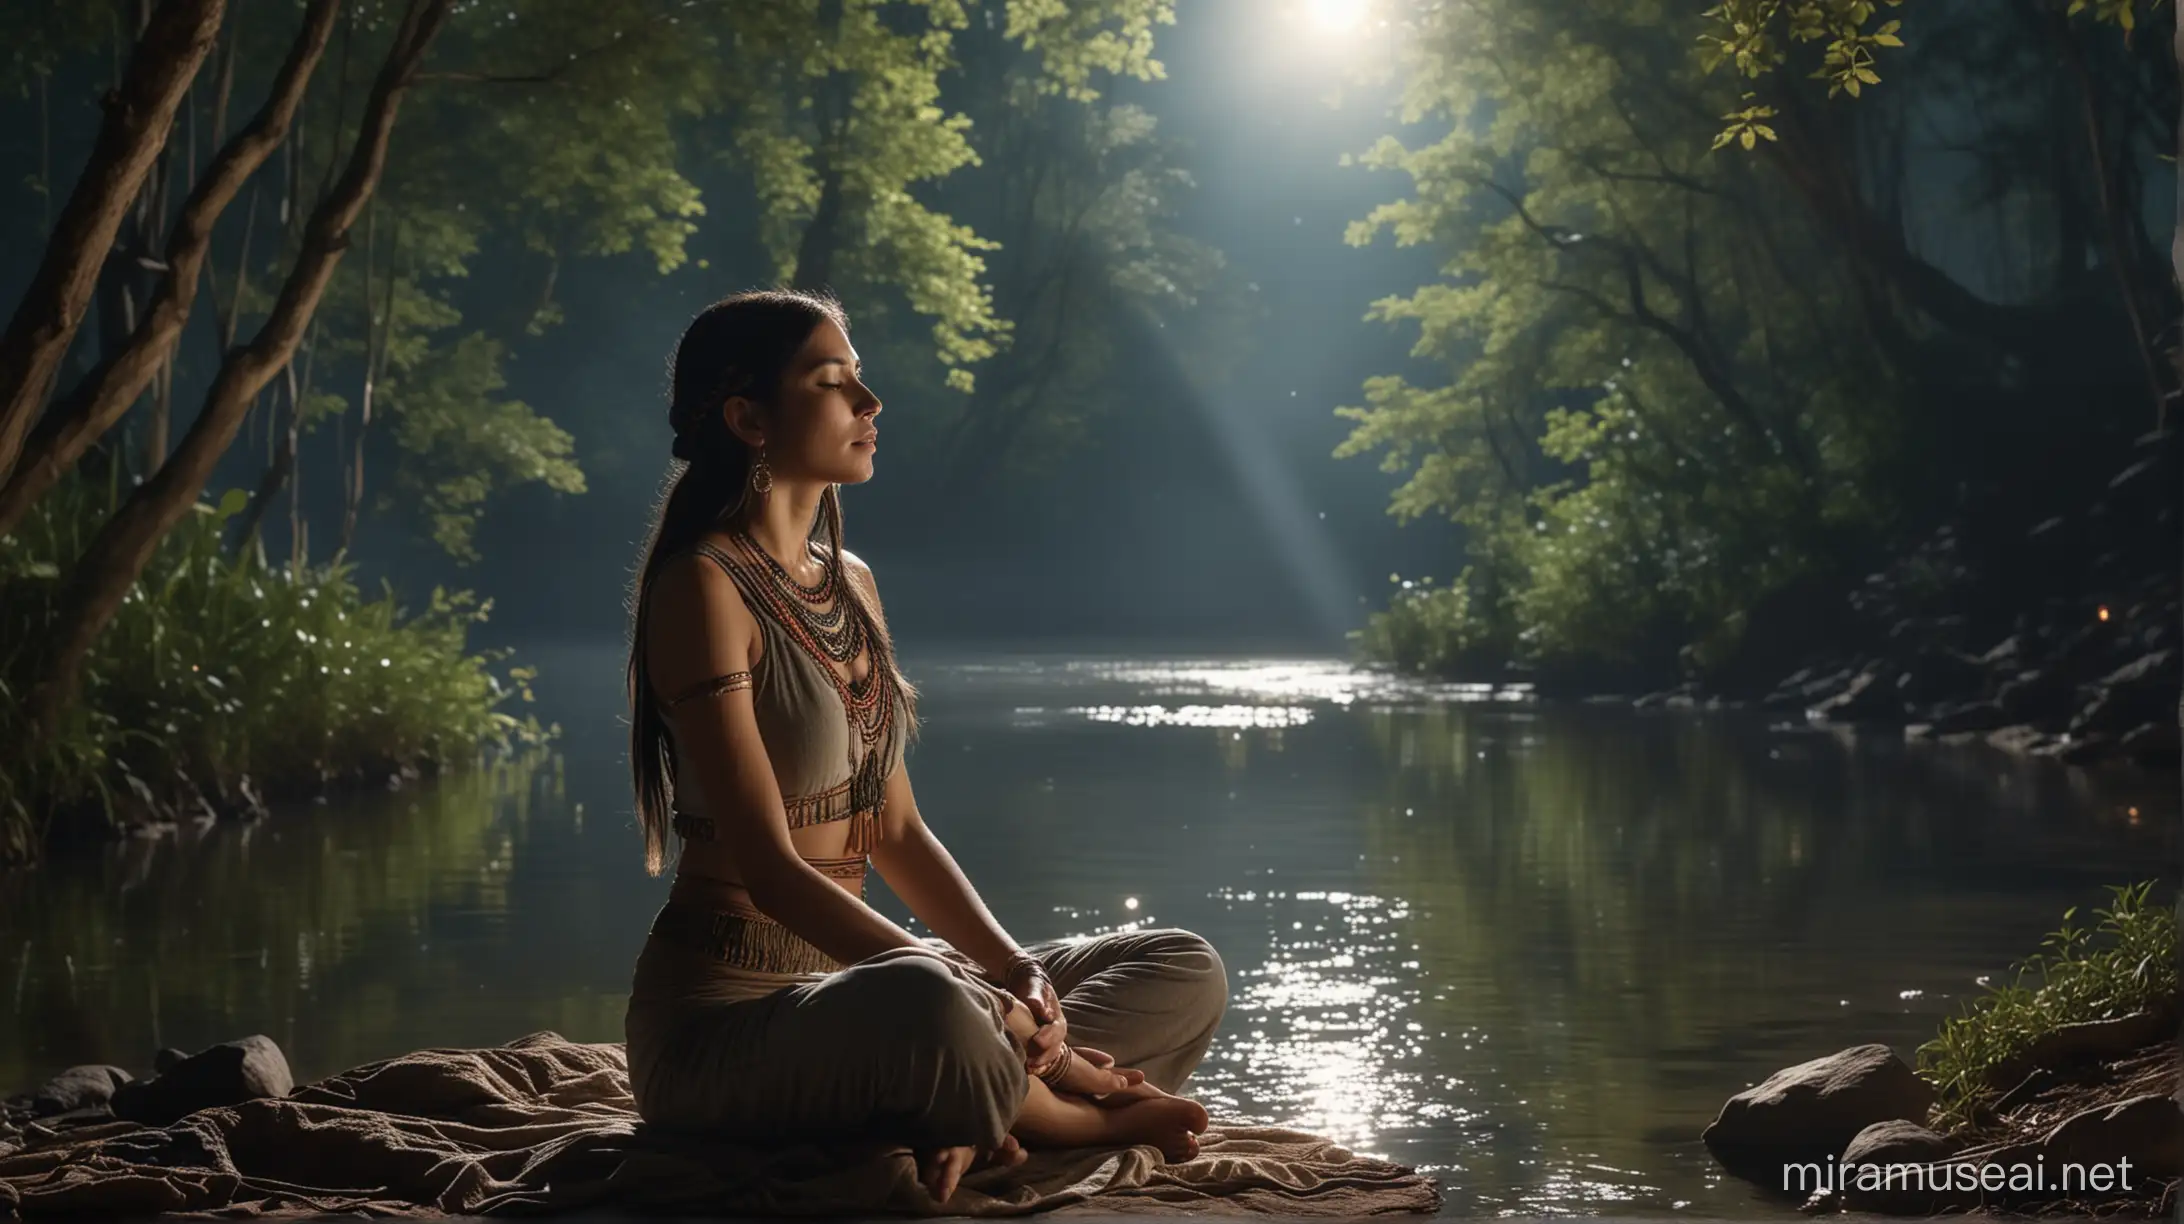 bella joven inca sentada a ojos cerrados meditando en una riviera de un bosque encantado, luz de luna llena, ambiente romántico y muy místico, imagen ultra real con detalles muy nítidas, cinematográfica 4k